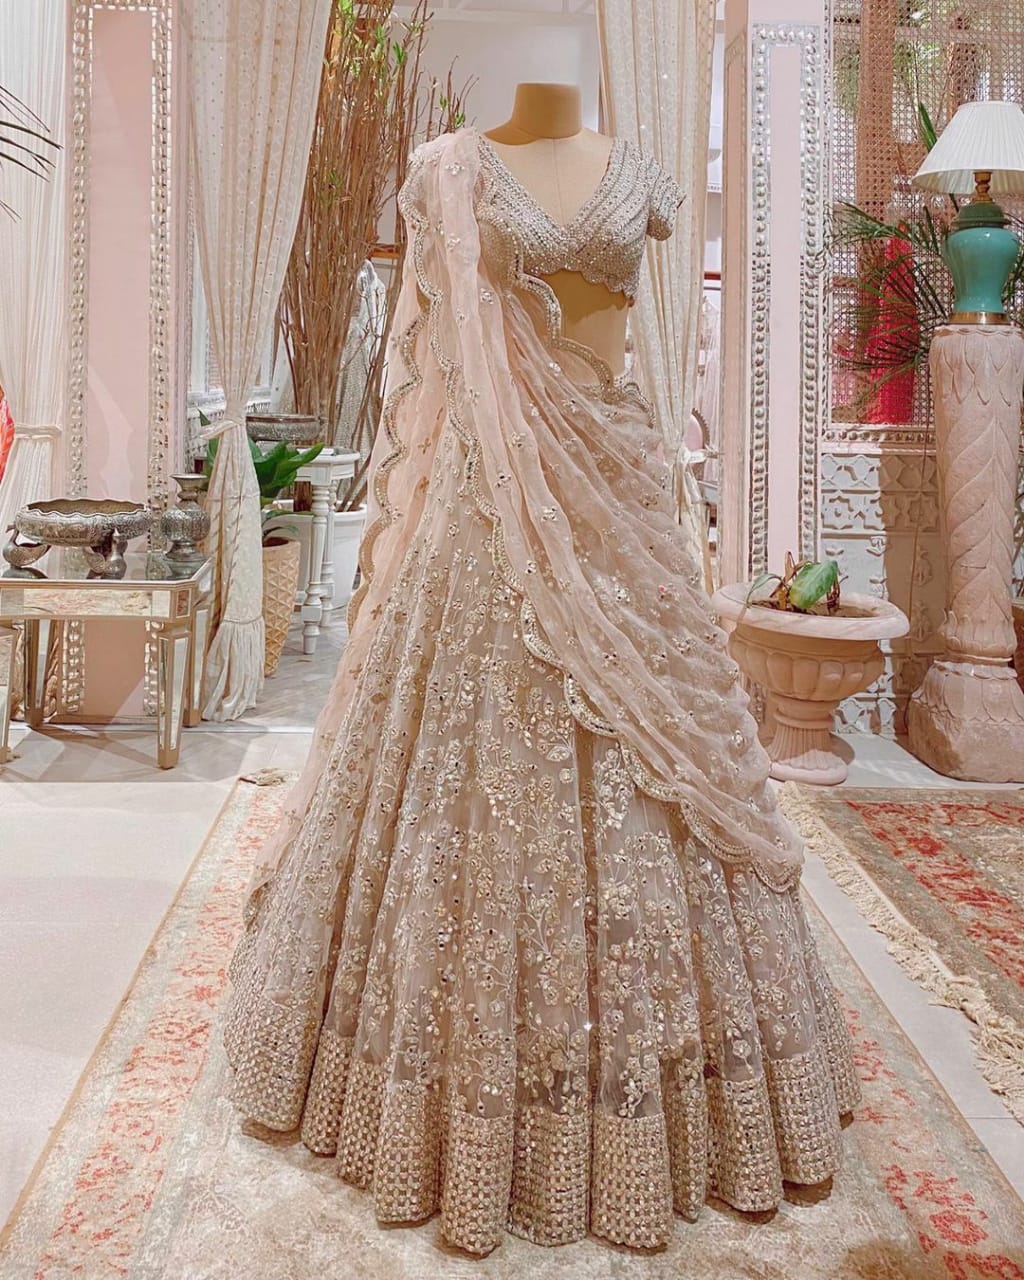 Bridal Lehenga | Buy Indian Bridal Lehenga for Women Online | Frontier Raas